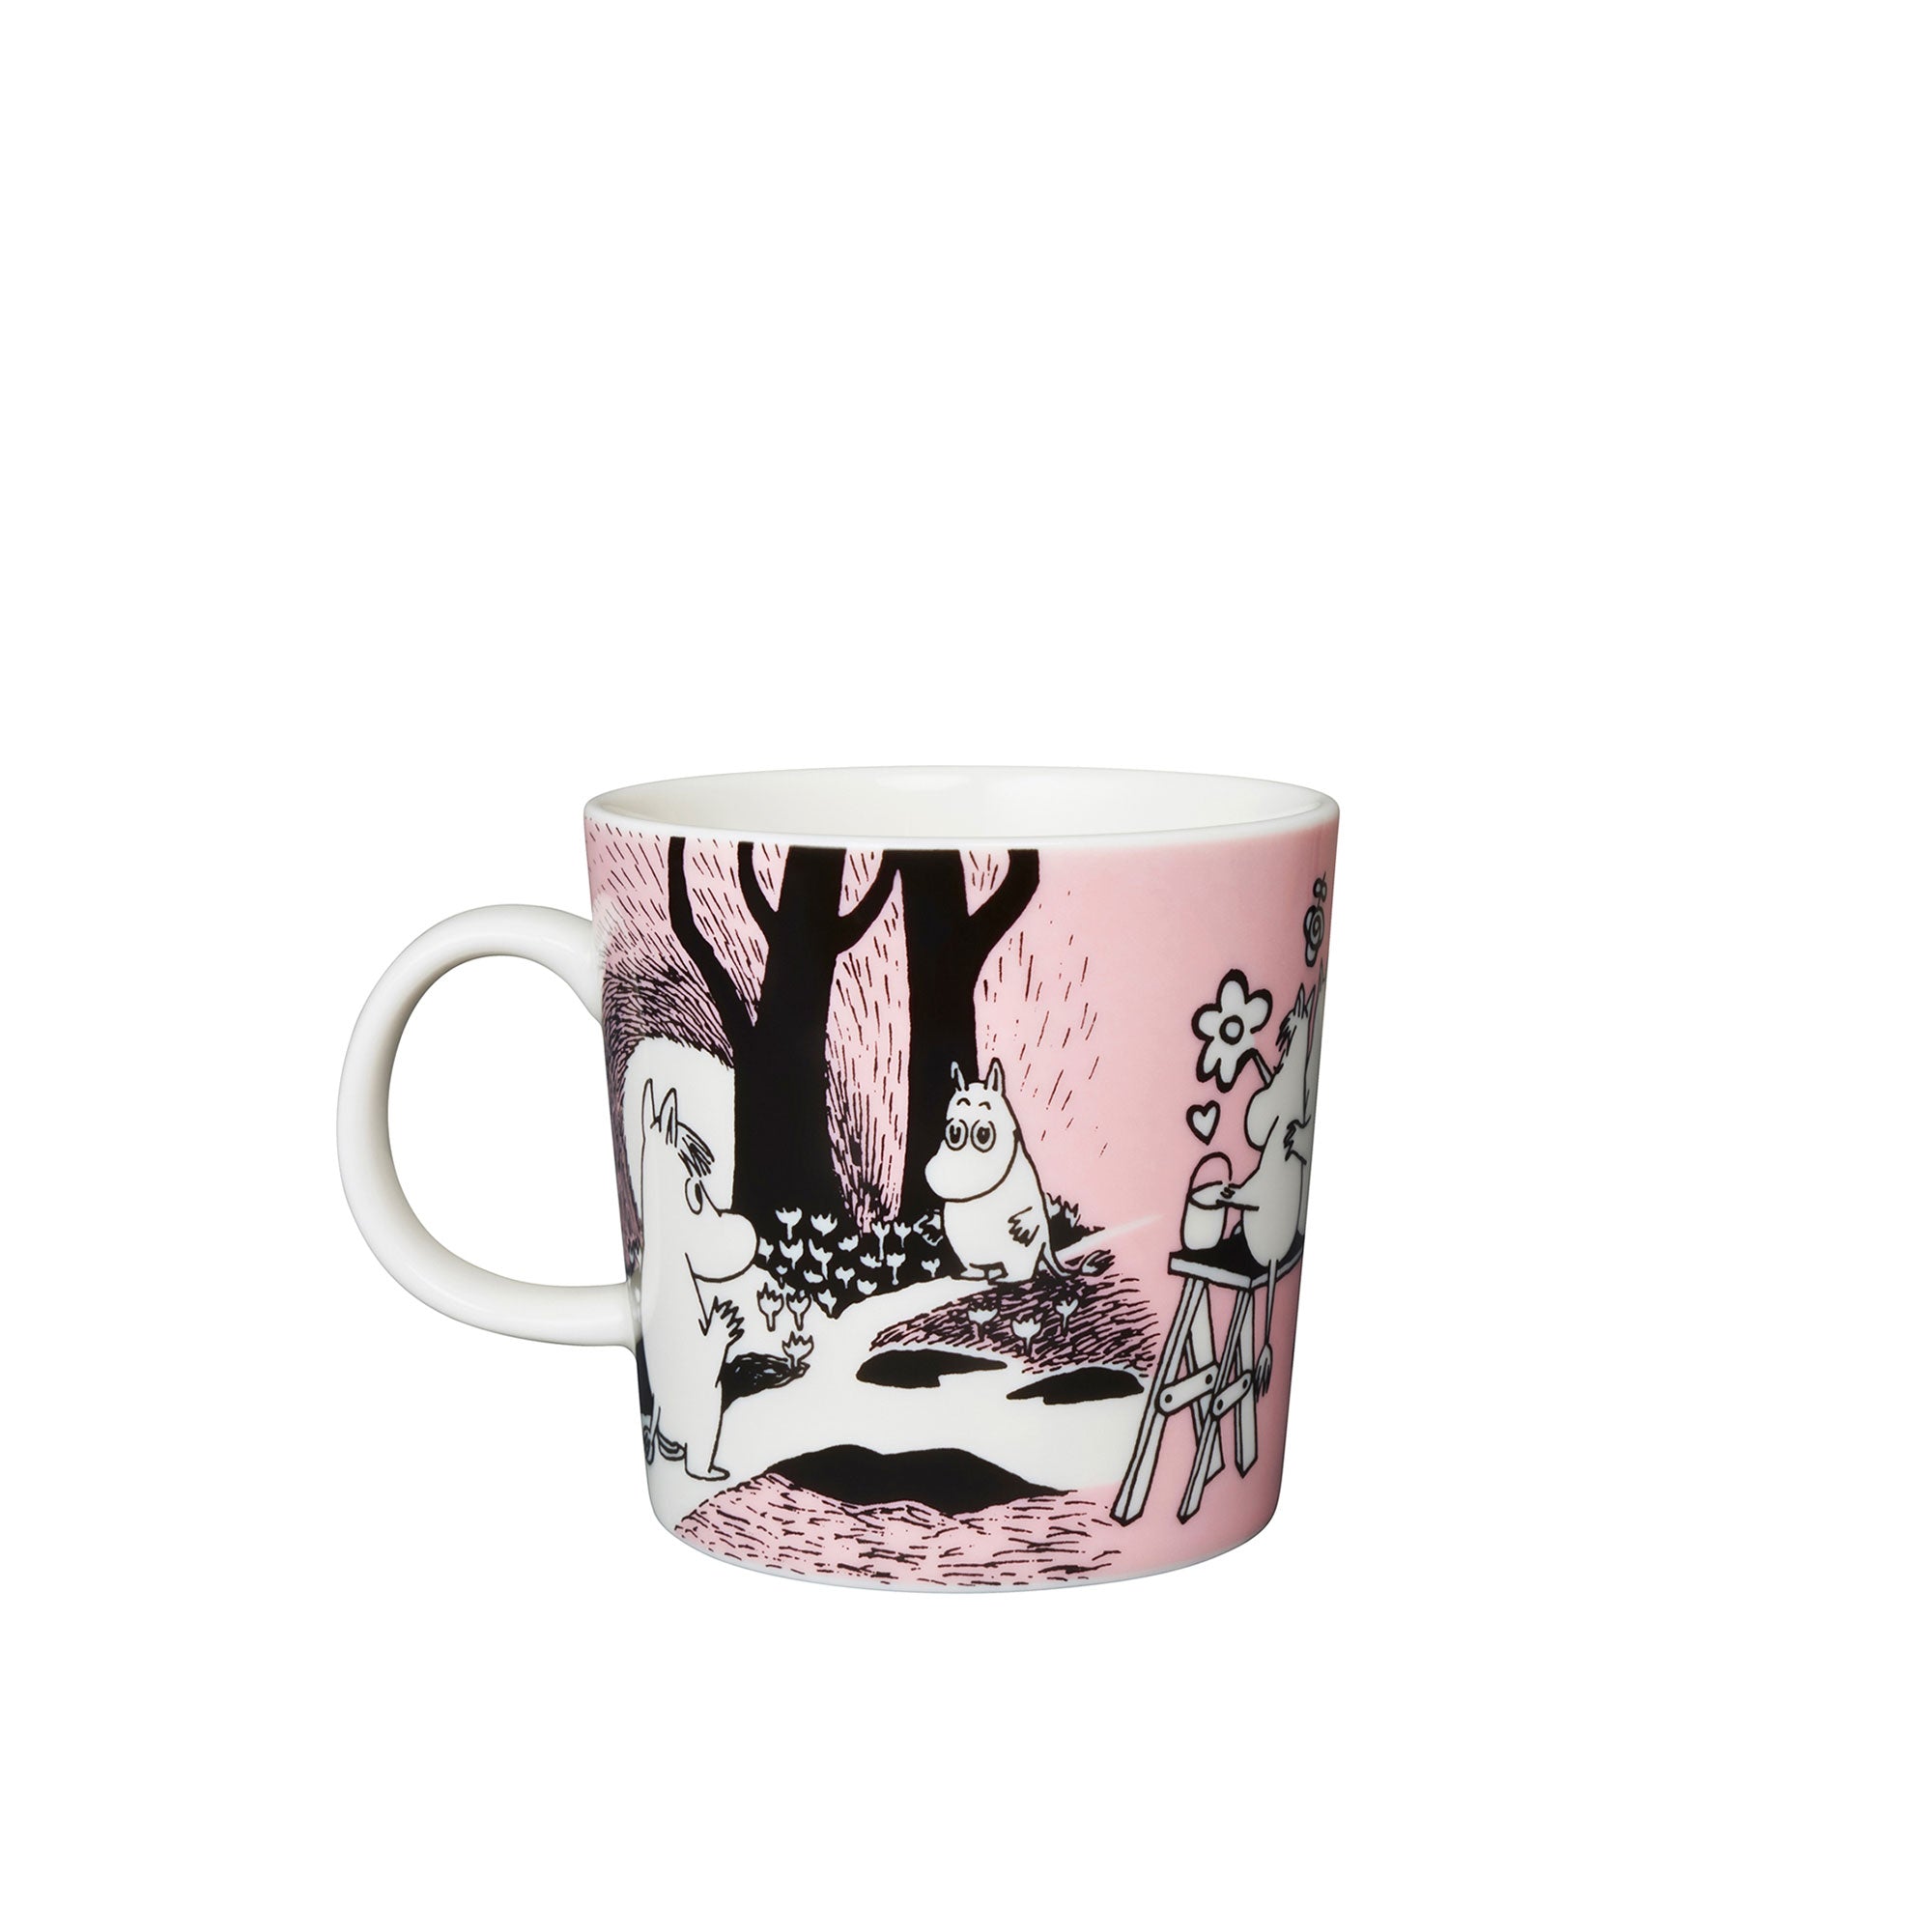 Moomin Love Mug